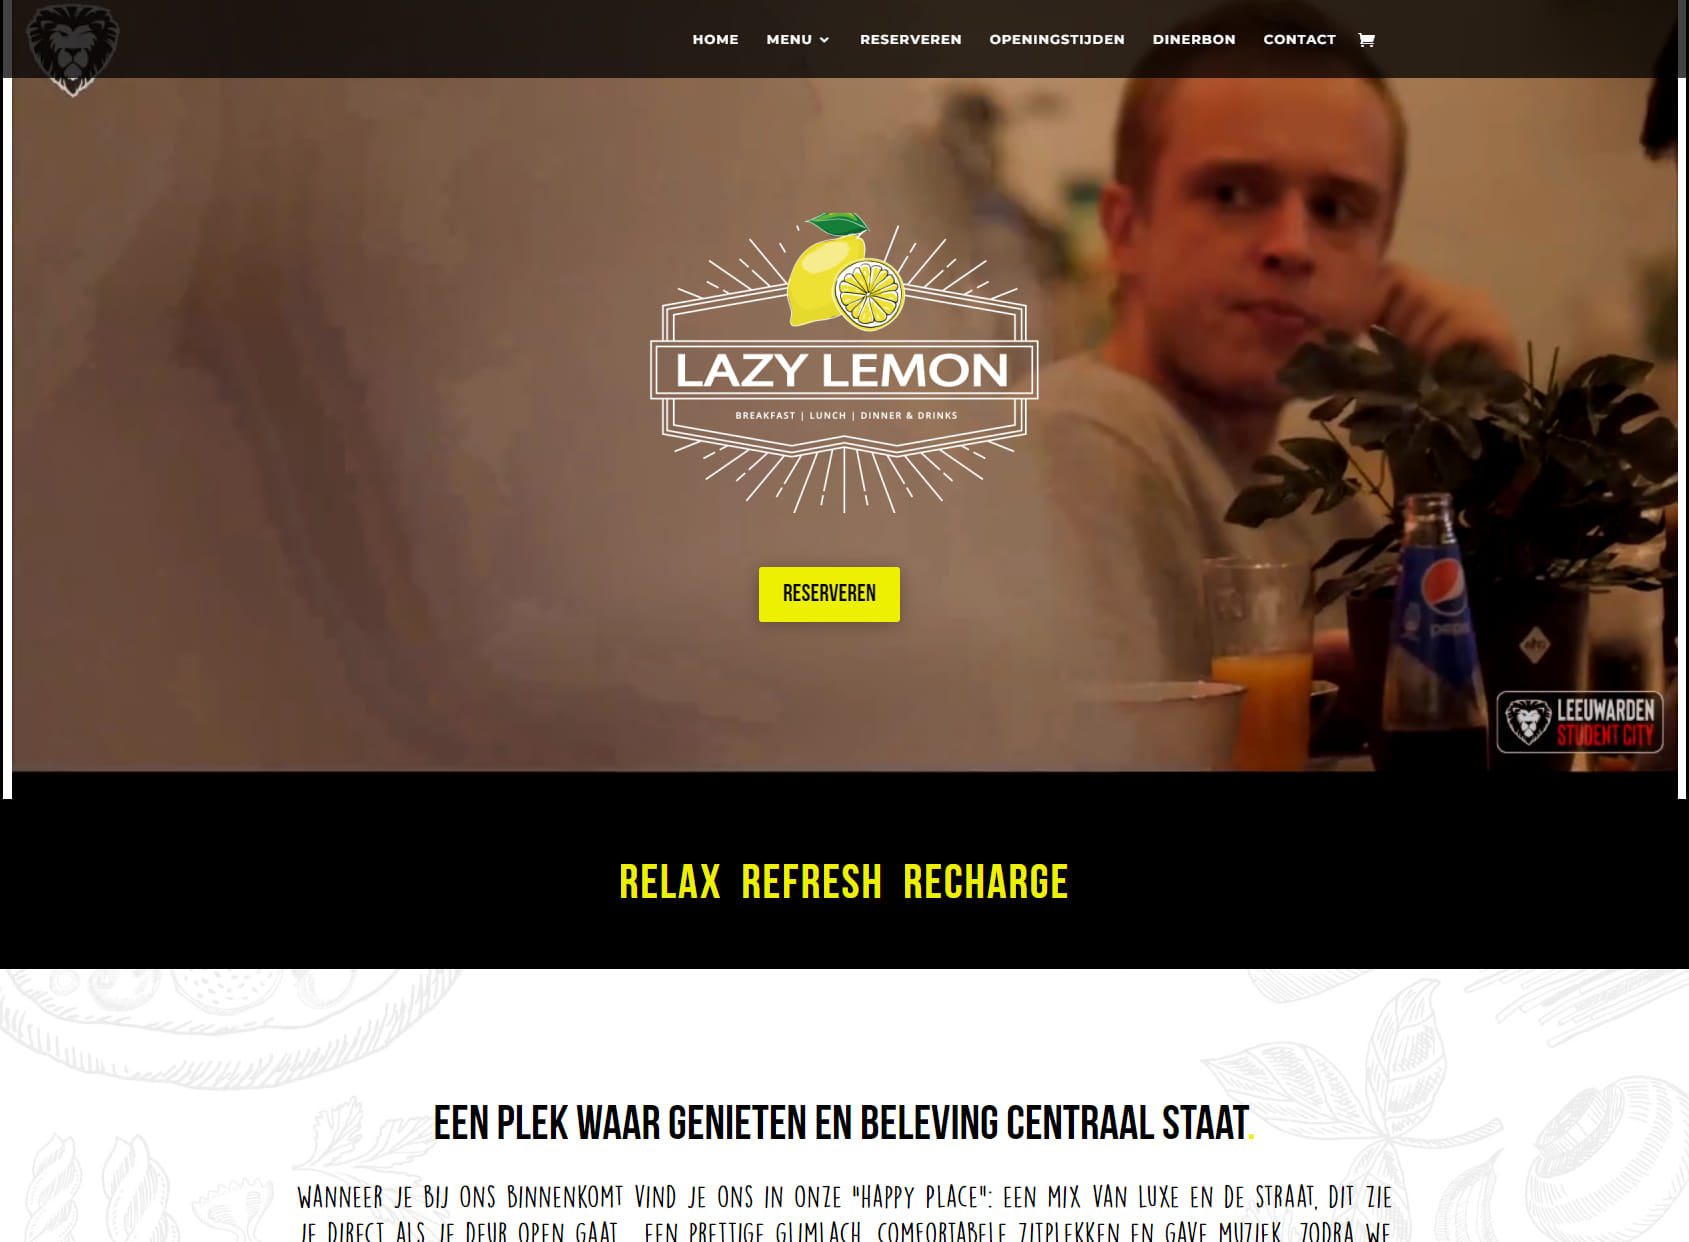 Lazy Lemon